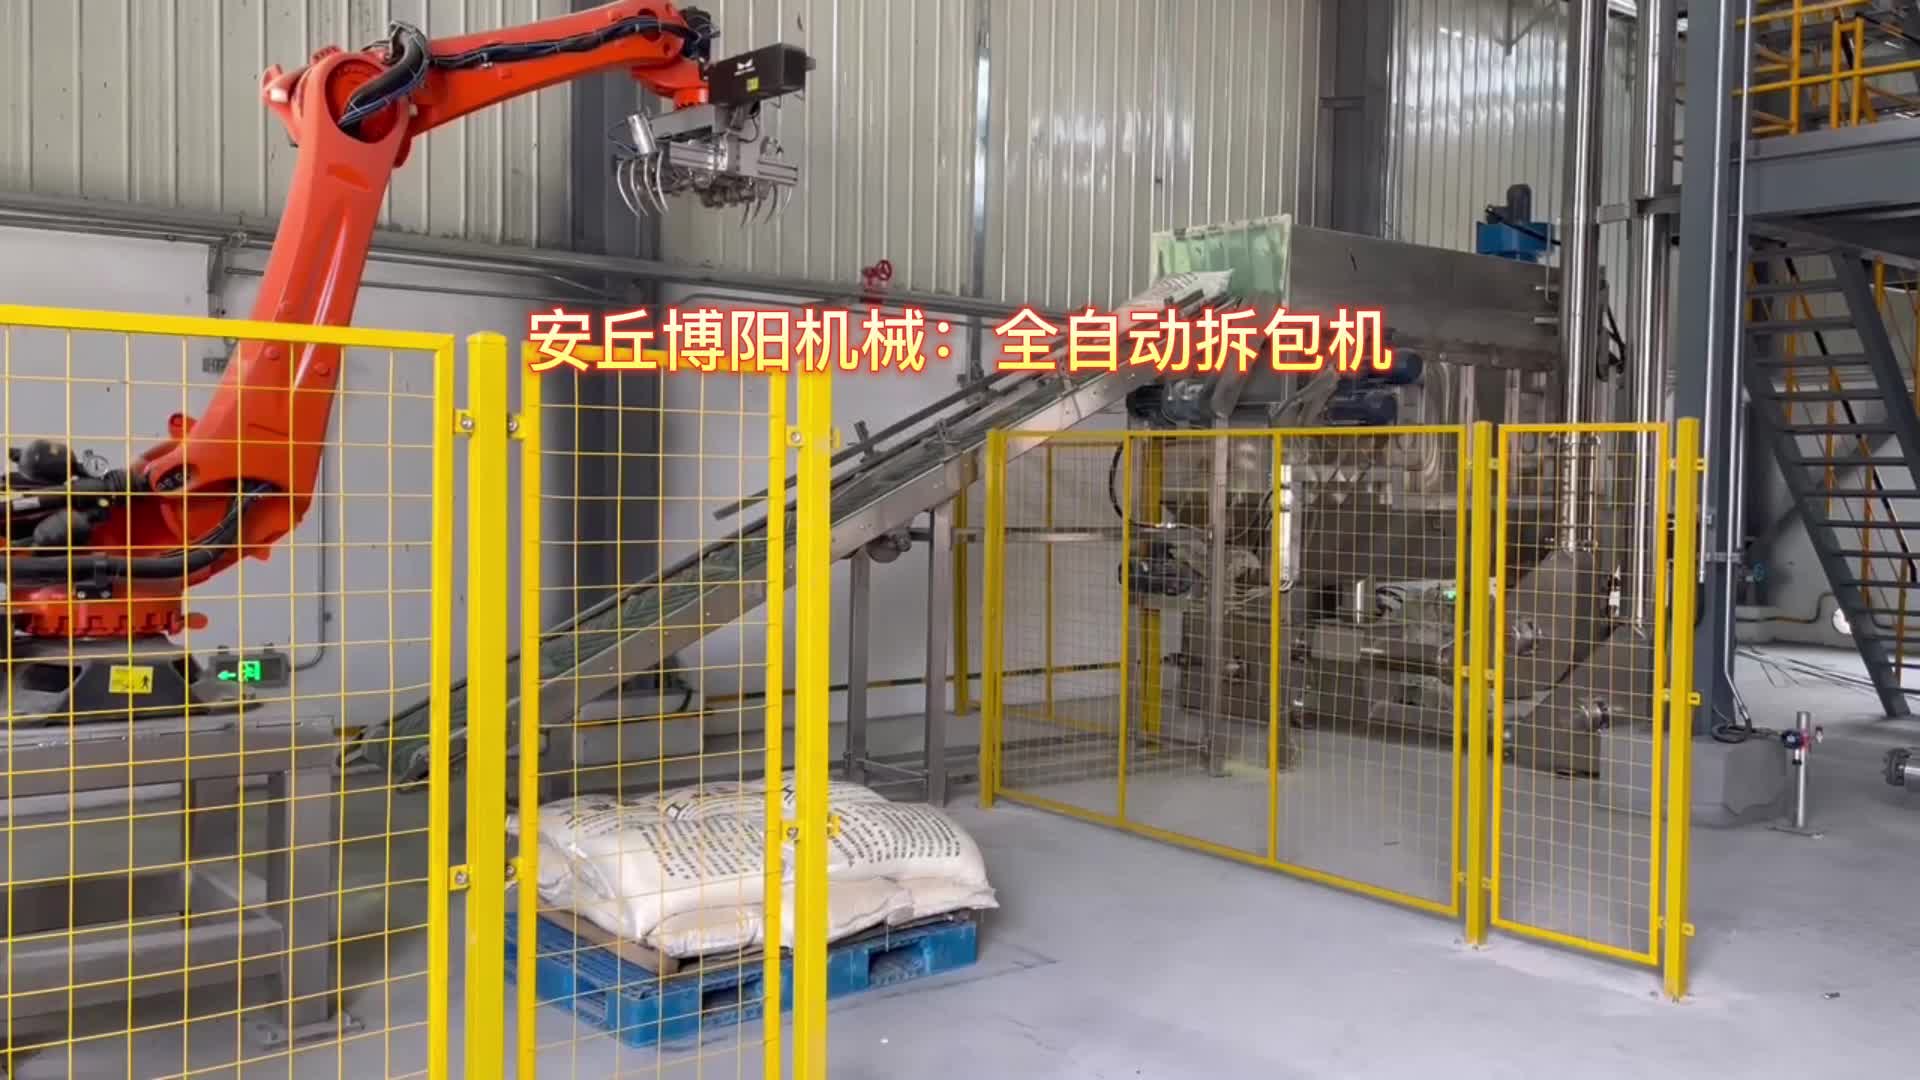 橡塑粉自动拆包机器人  机器人自动破袋站应用# 全自动拆包机